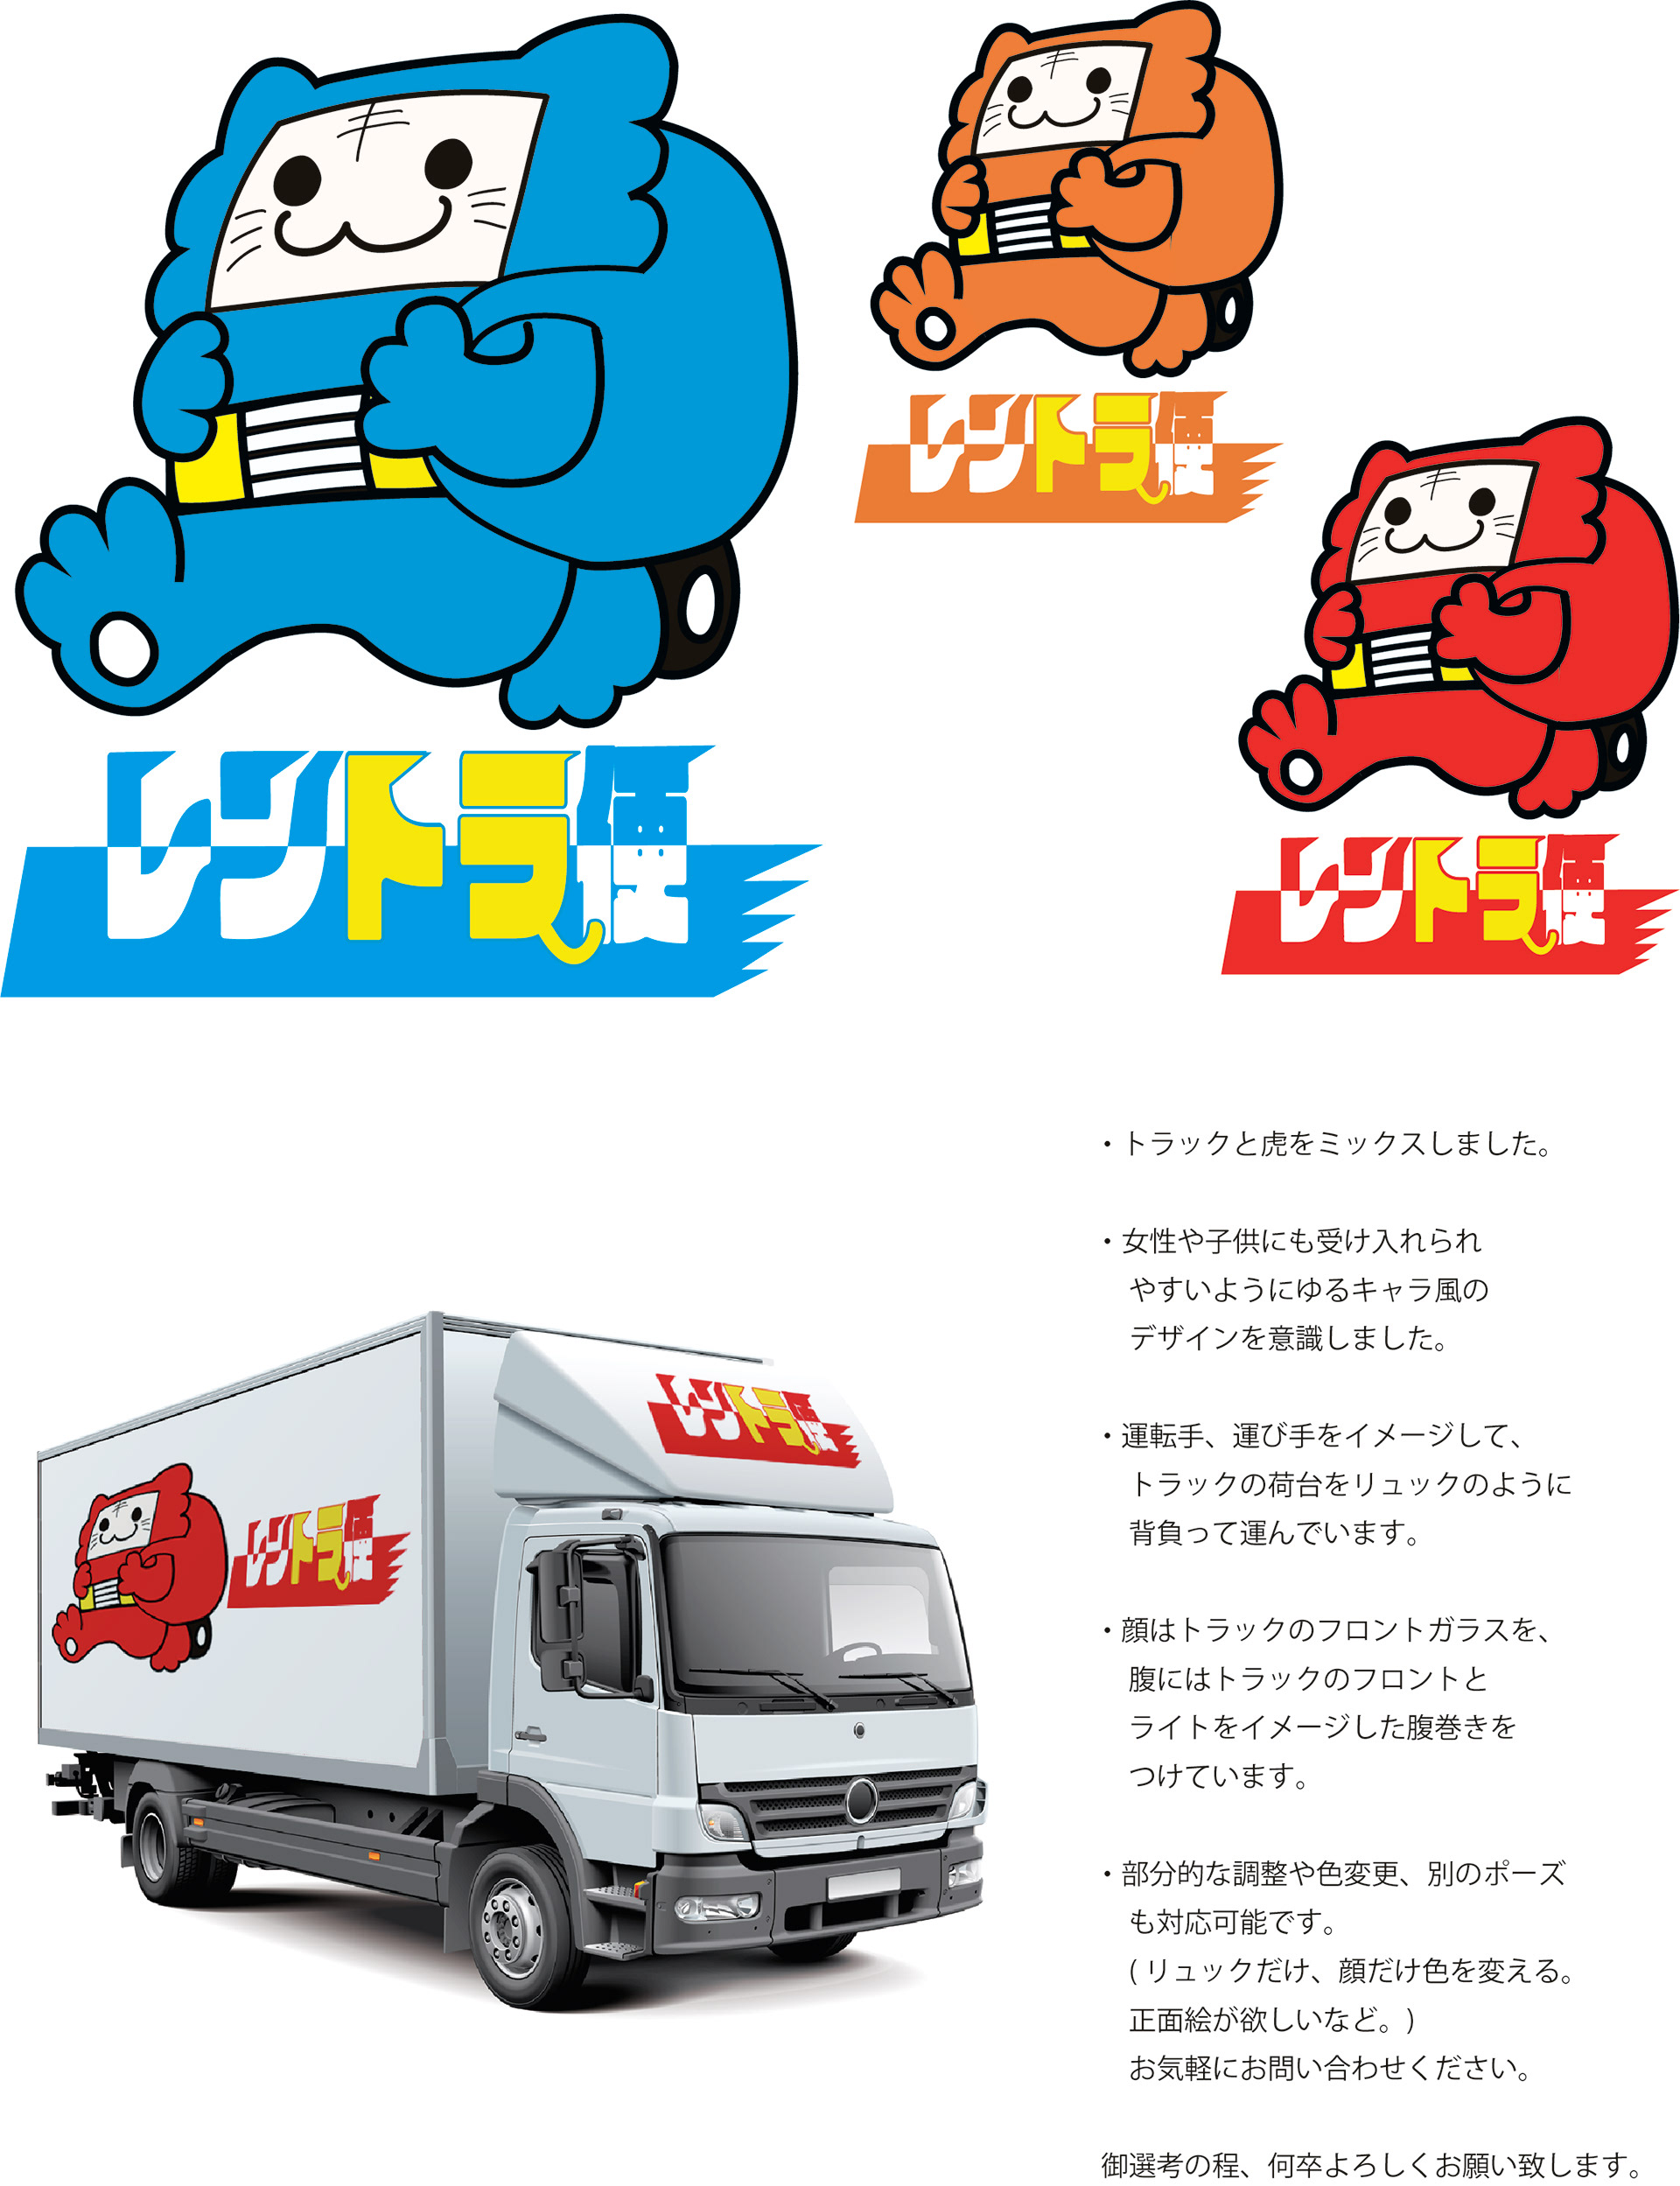 尾崎圭志ポートフォリオサイト 企業用ロゴキャラクターデザイン